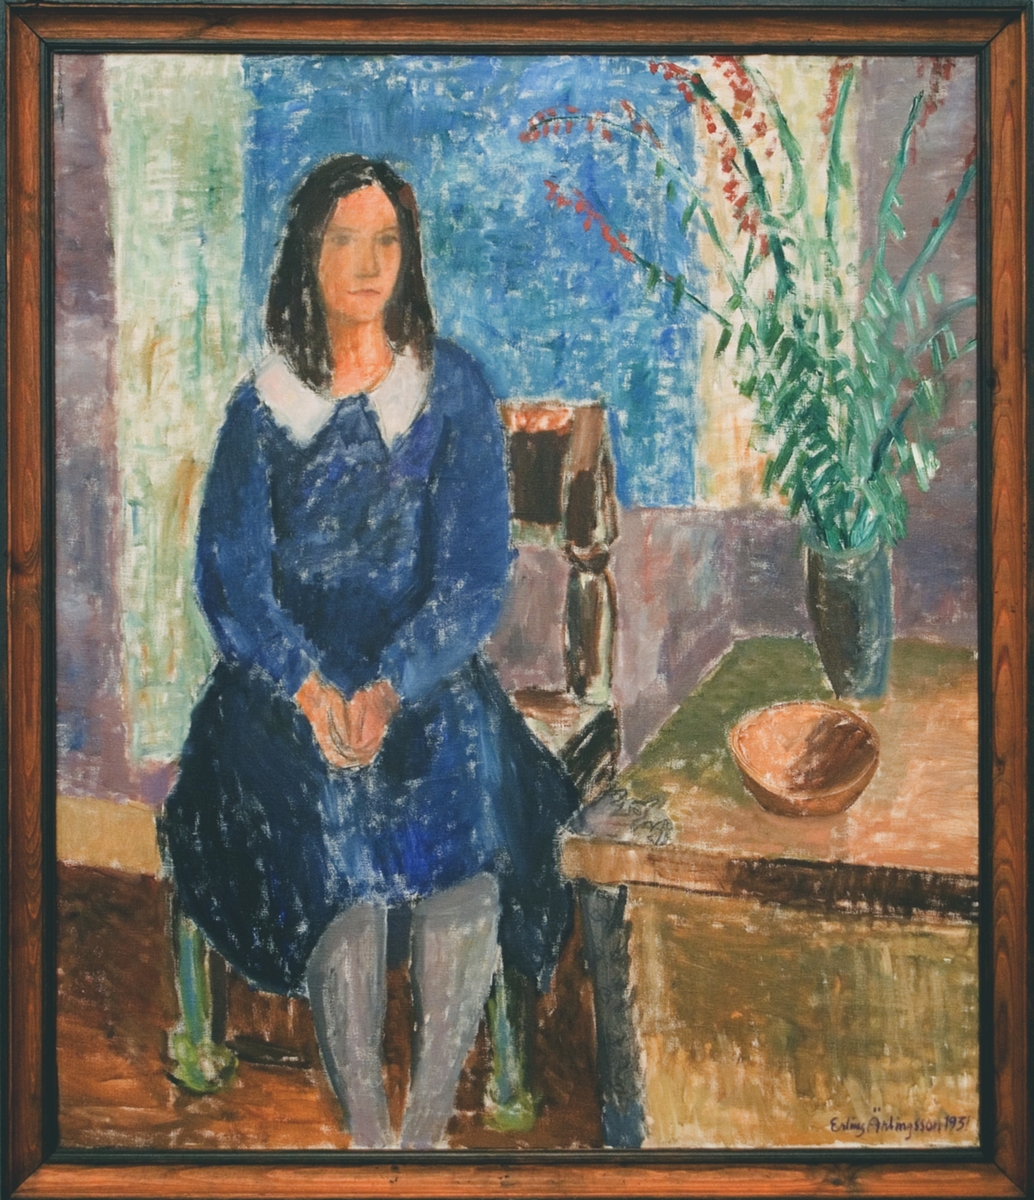 Oljemålning på duk, "Kväll" av Erling Ärlingsson. Interiör med blåklädd flicka sittande på en stol; t.h. bord med brun skål och vas med röda blommor.